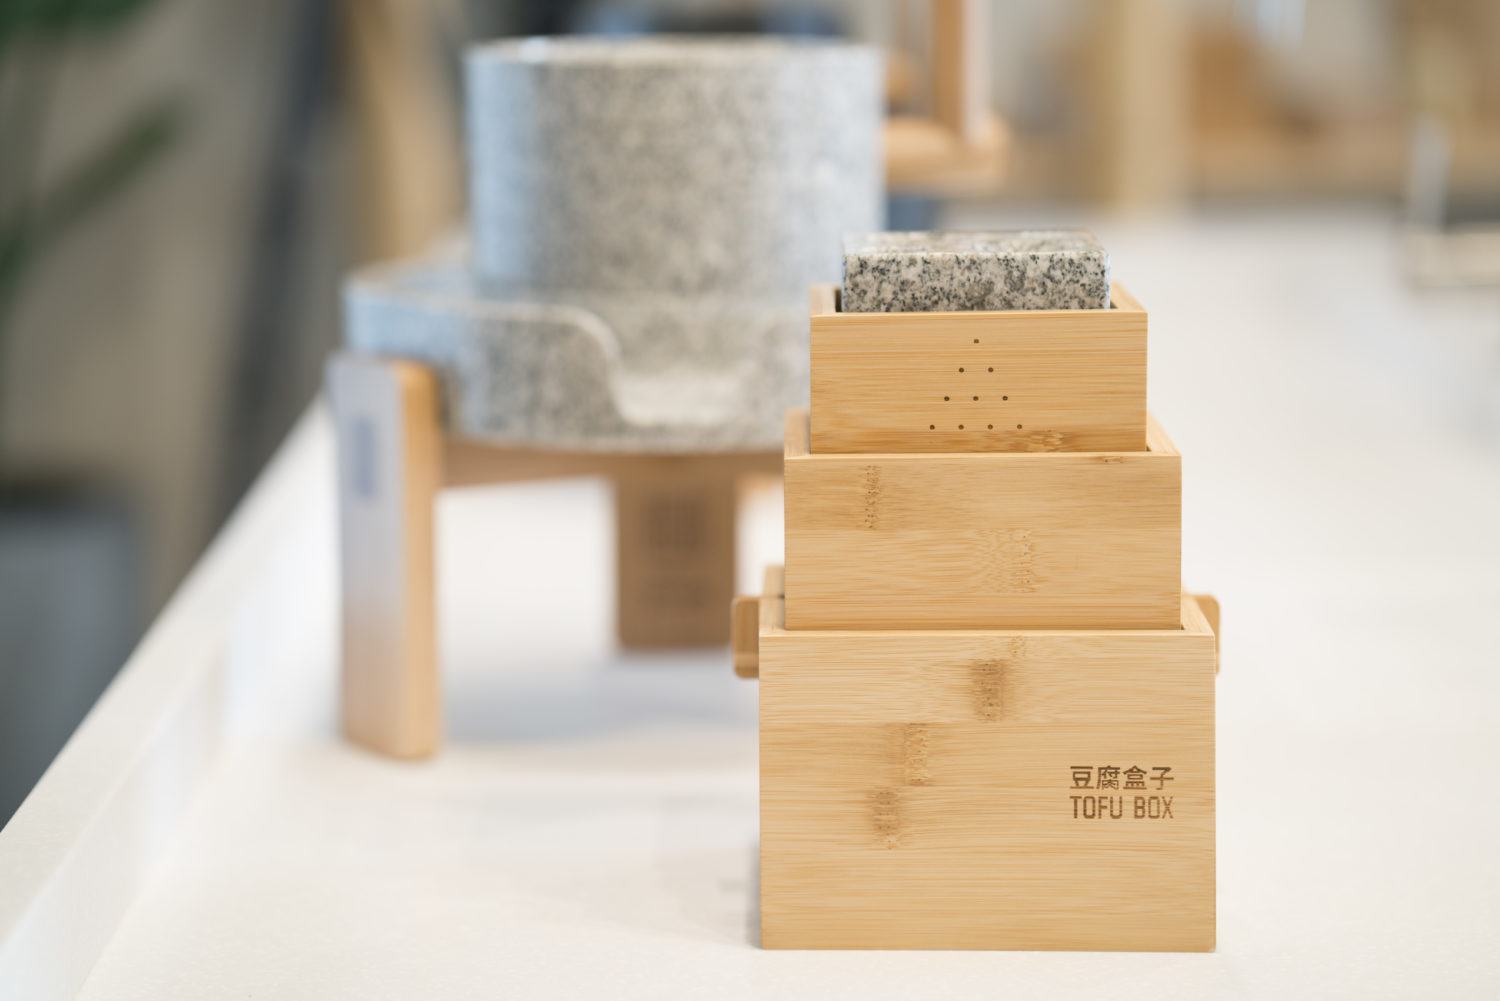 Die Tofuproduktion ist eine Kunst für sich, die bei Huadou Soy Concept Store zelebriert wird. Foto: Huadou Soy Concept Store